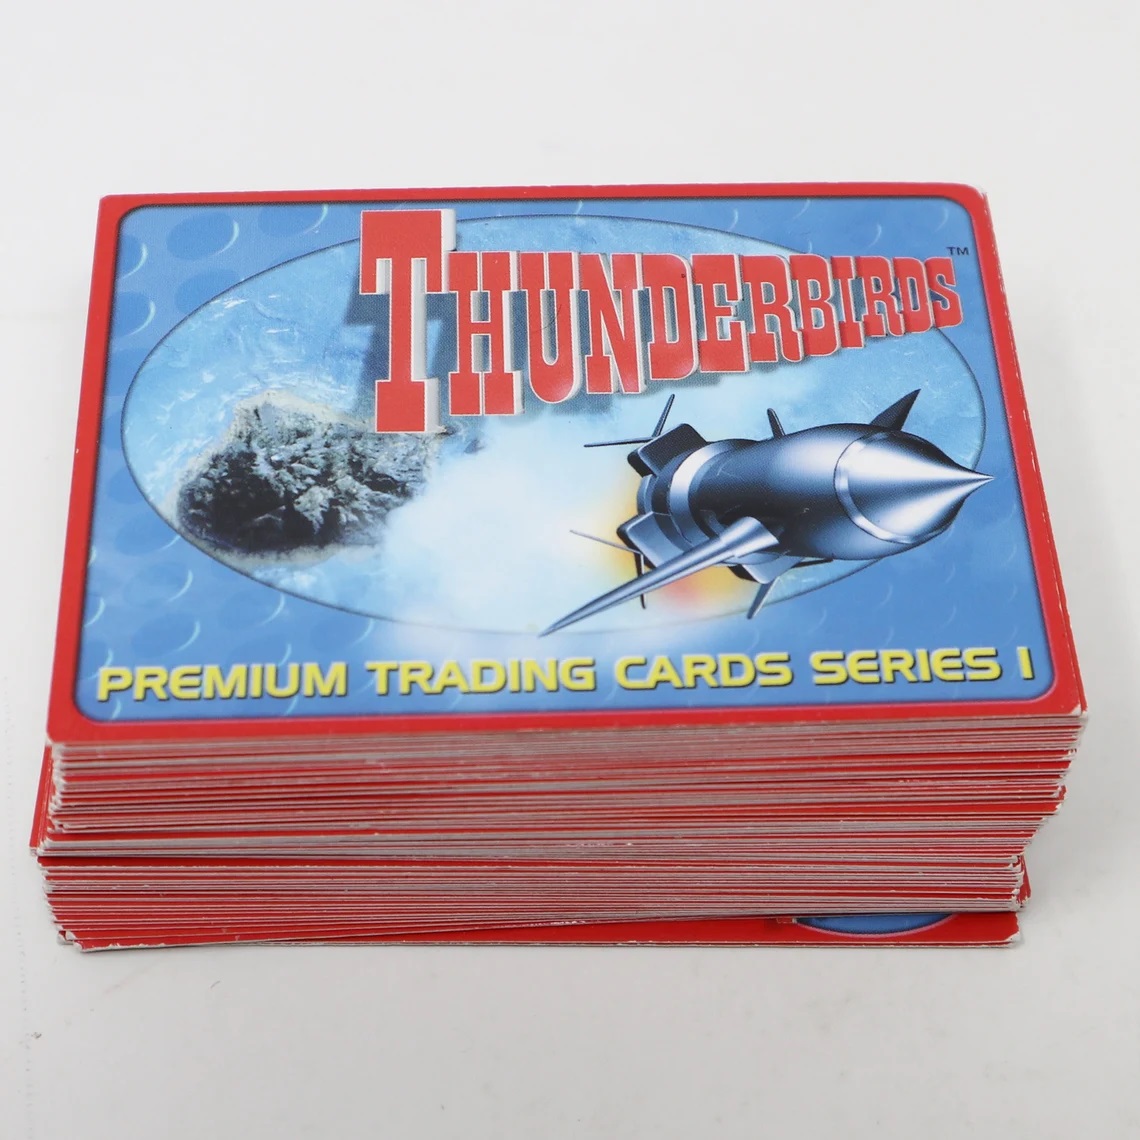 Thunderbirds cards.jpg